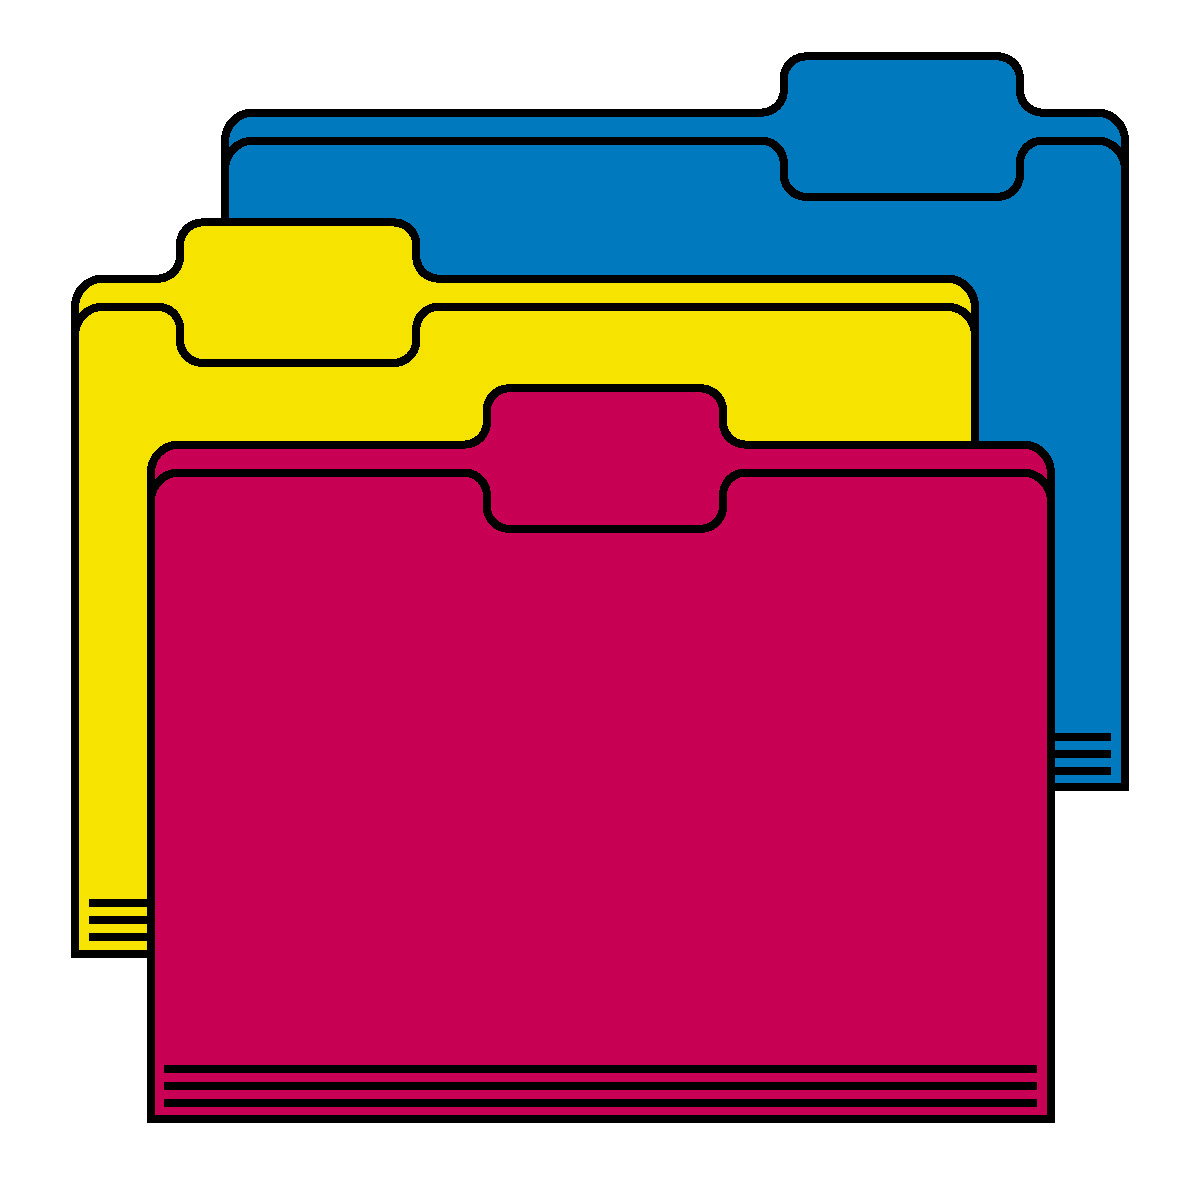 Folder Clipart yellow journal